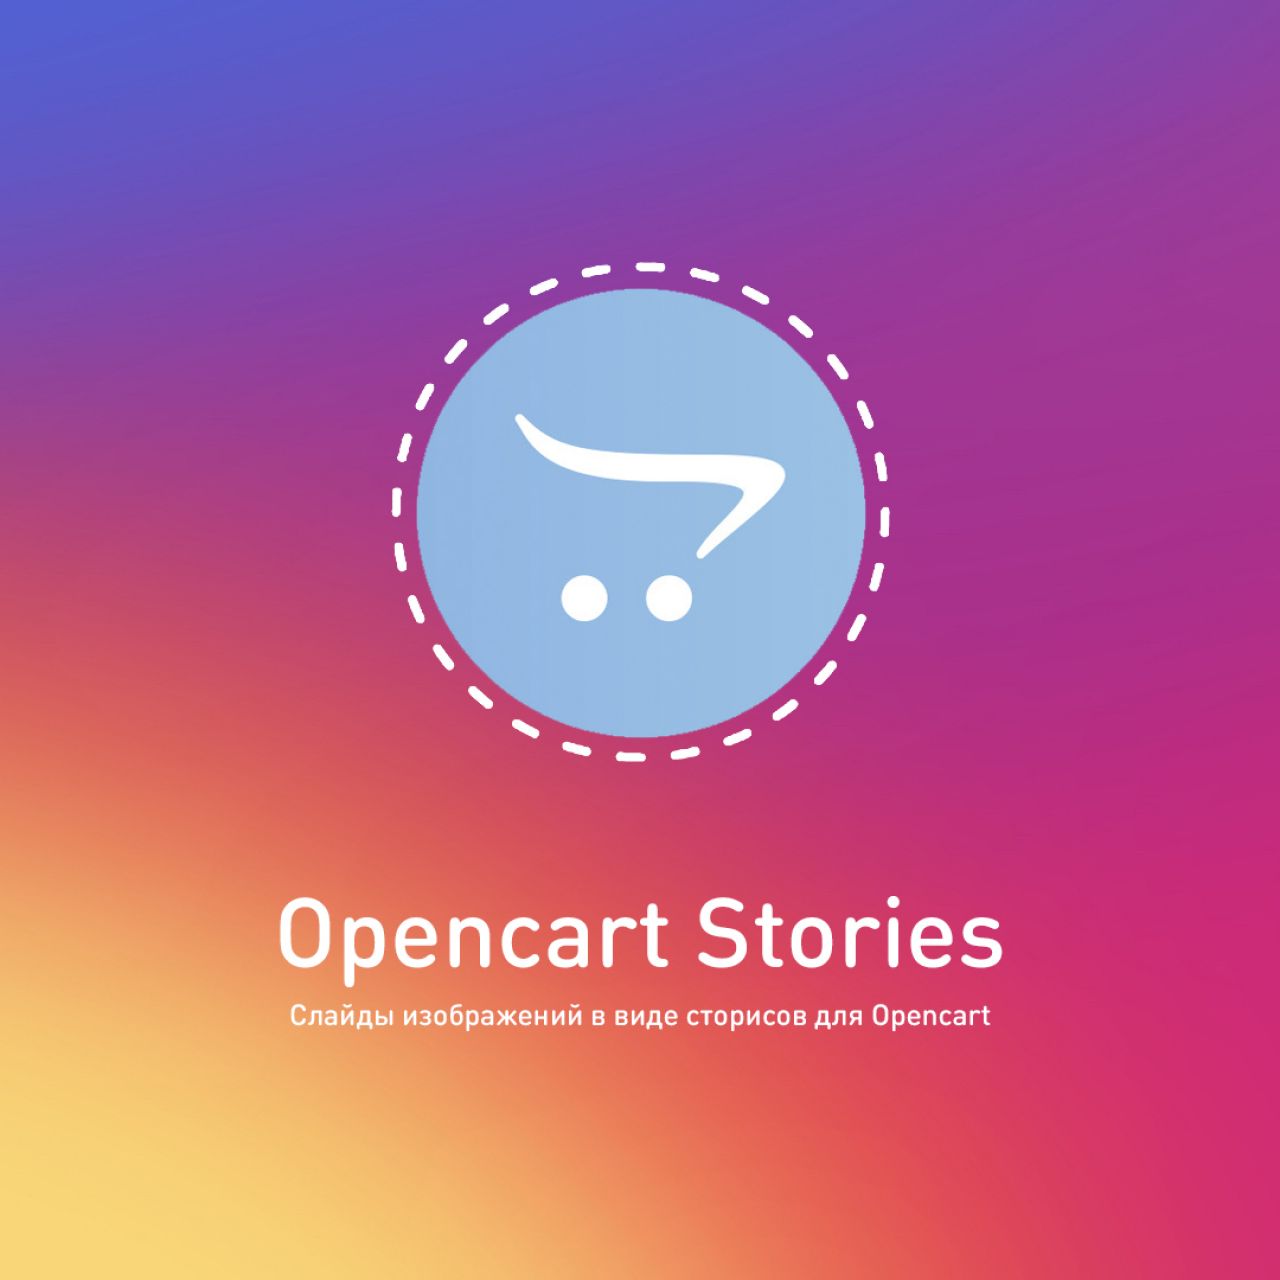 Opencart Stories - сторисы для Opencart 1.1 из категории Новости, статьи, блоги для CMS OpenCart (ОпенКарт)